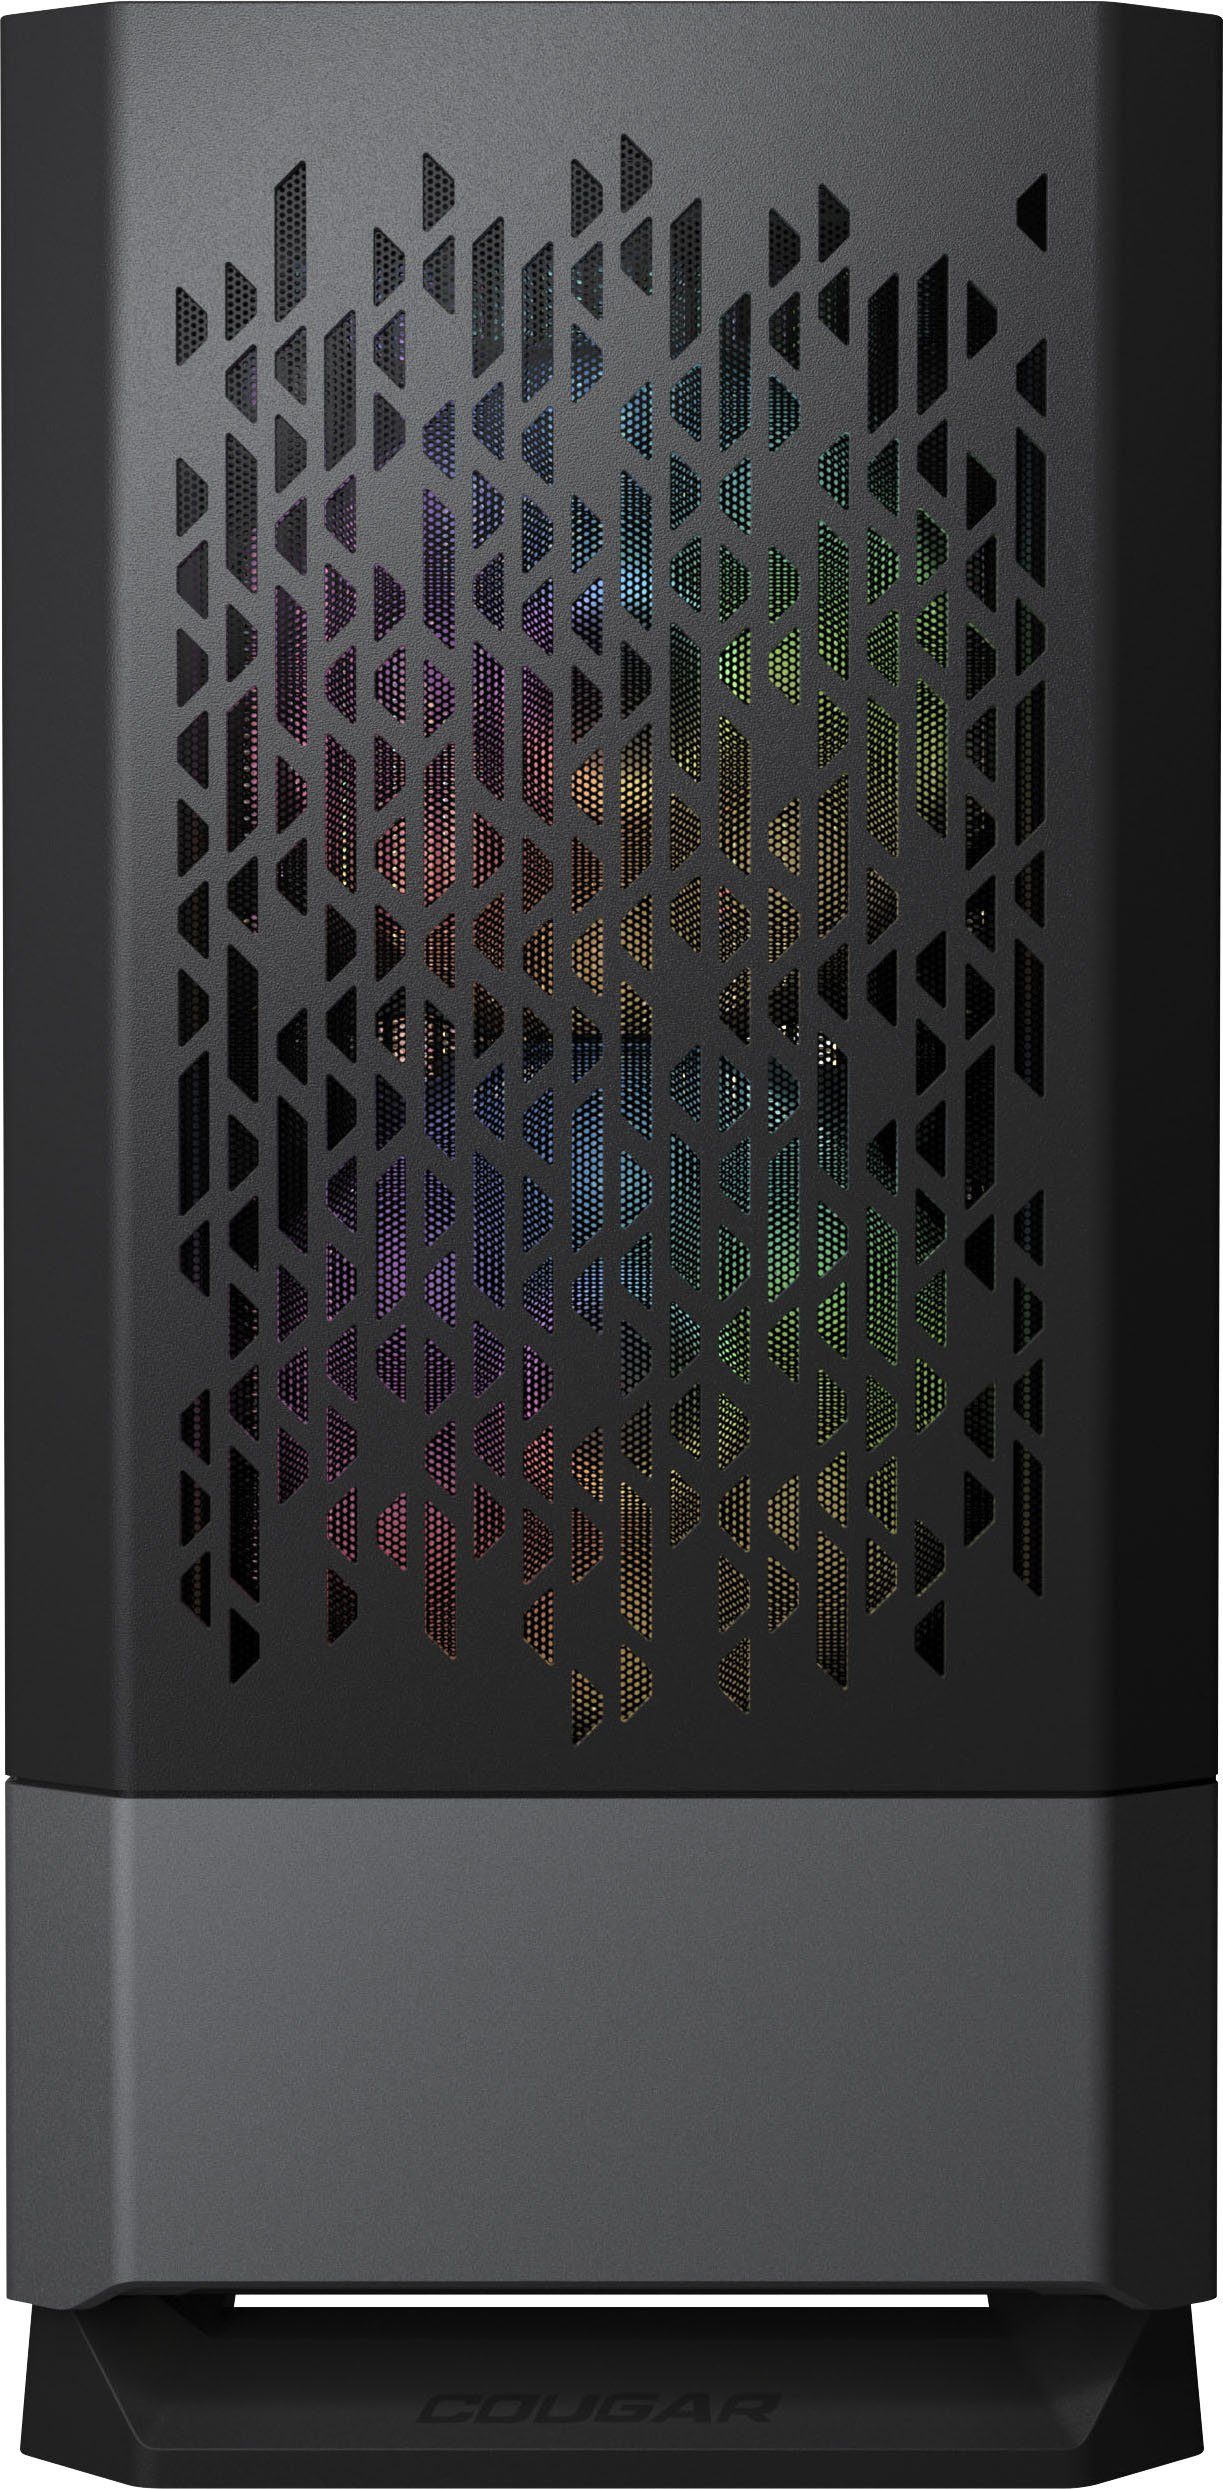 Cougar Gaming-Gehäuse Mini Tower MG140 Air RGB, RGB Beleuchtung